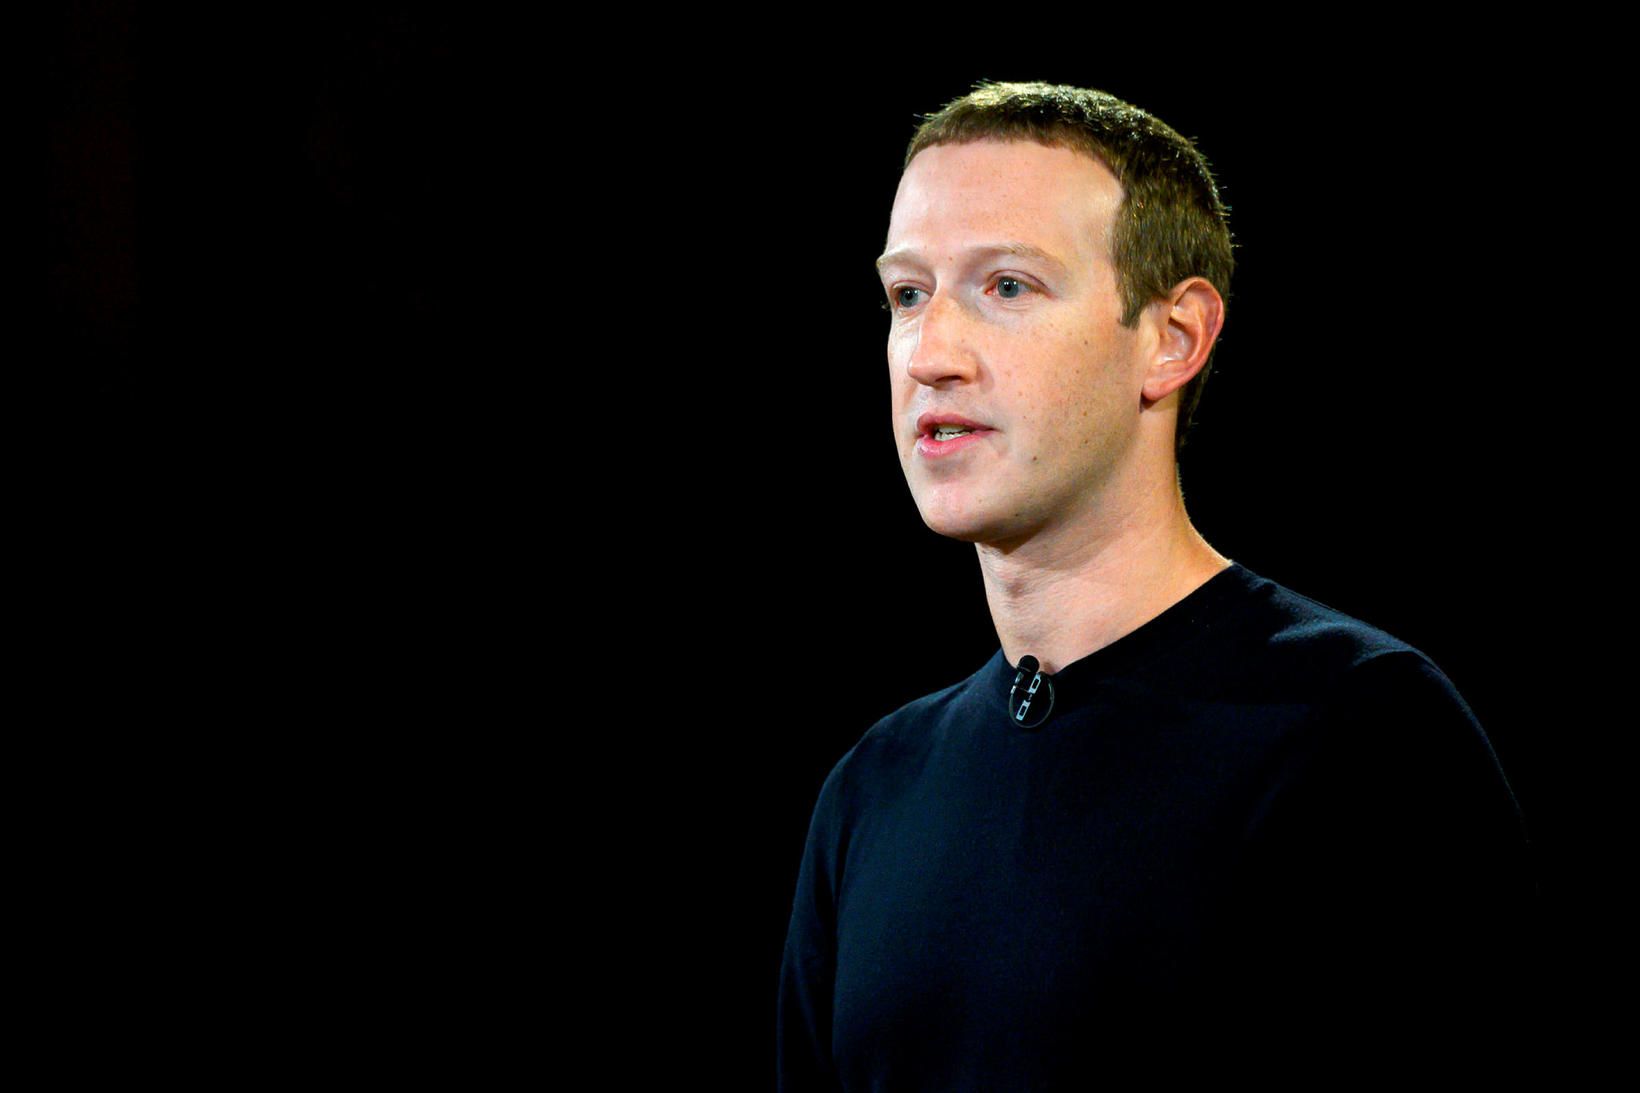 Mark Zuckerberg, framkvæmdastjóri Facebook, hefur verið harðlega gagnrýndur fyrir að …